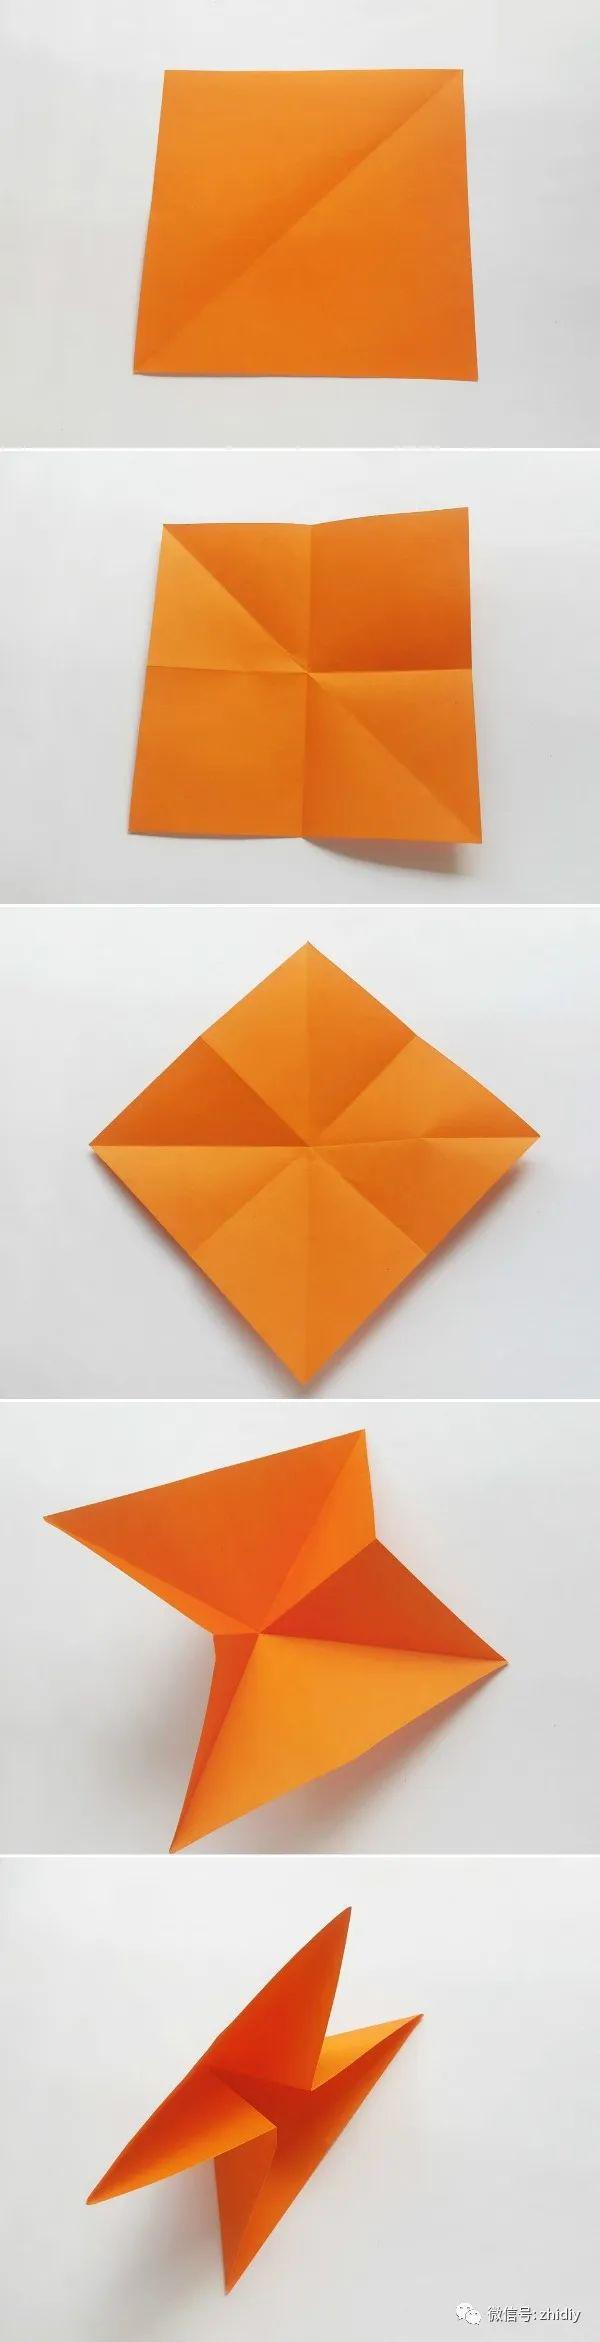 折纸郁金香比较简单,亲子手工也可以做.